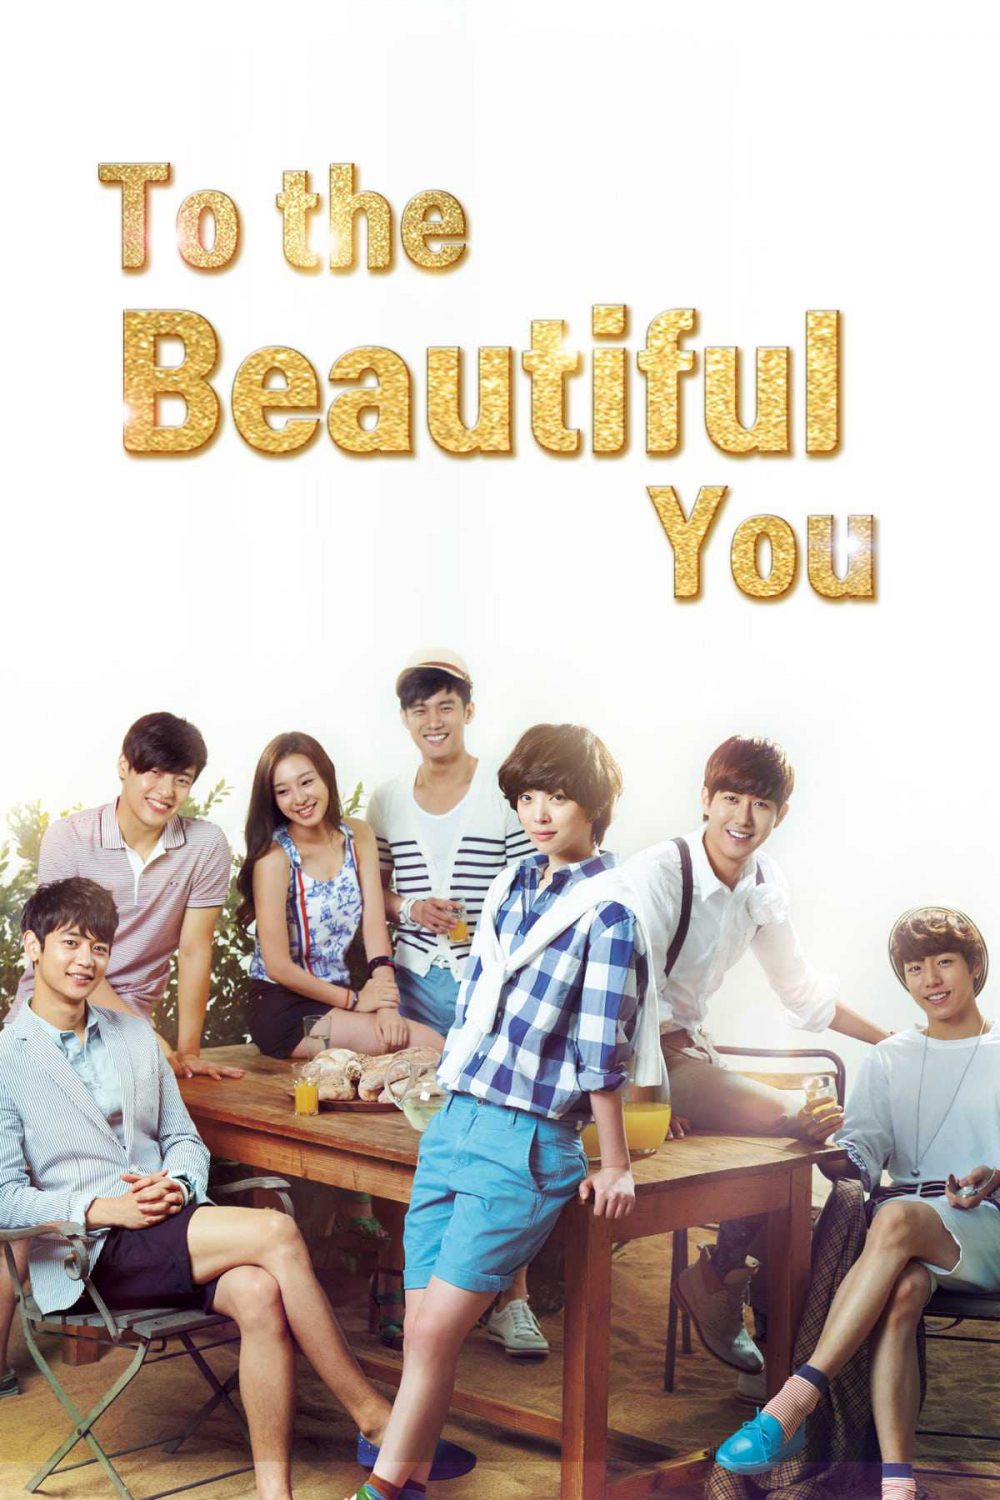 Gửi người xinh tươi tắn - To The Beautiful You (2012)